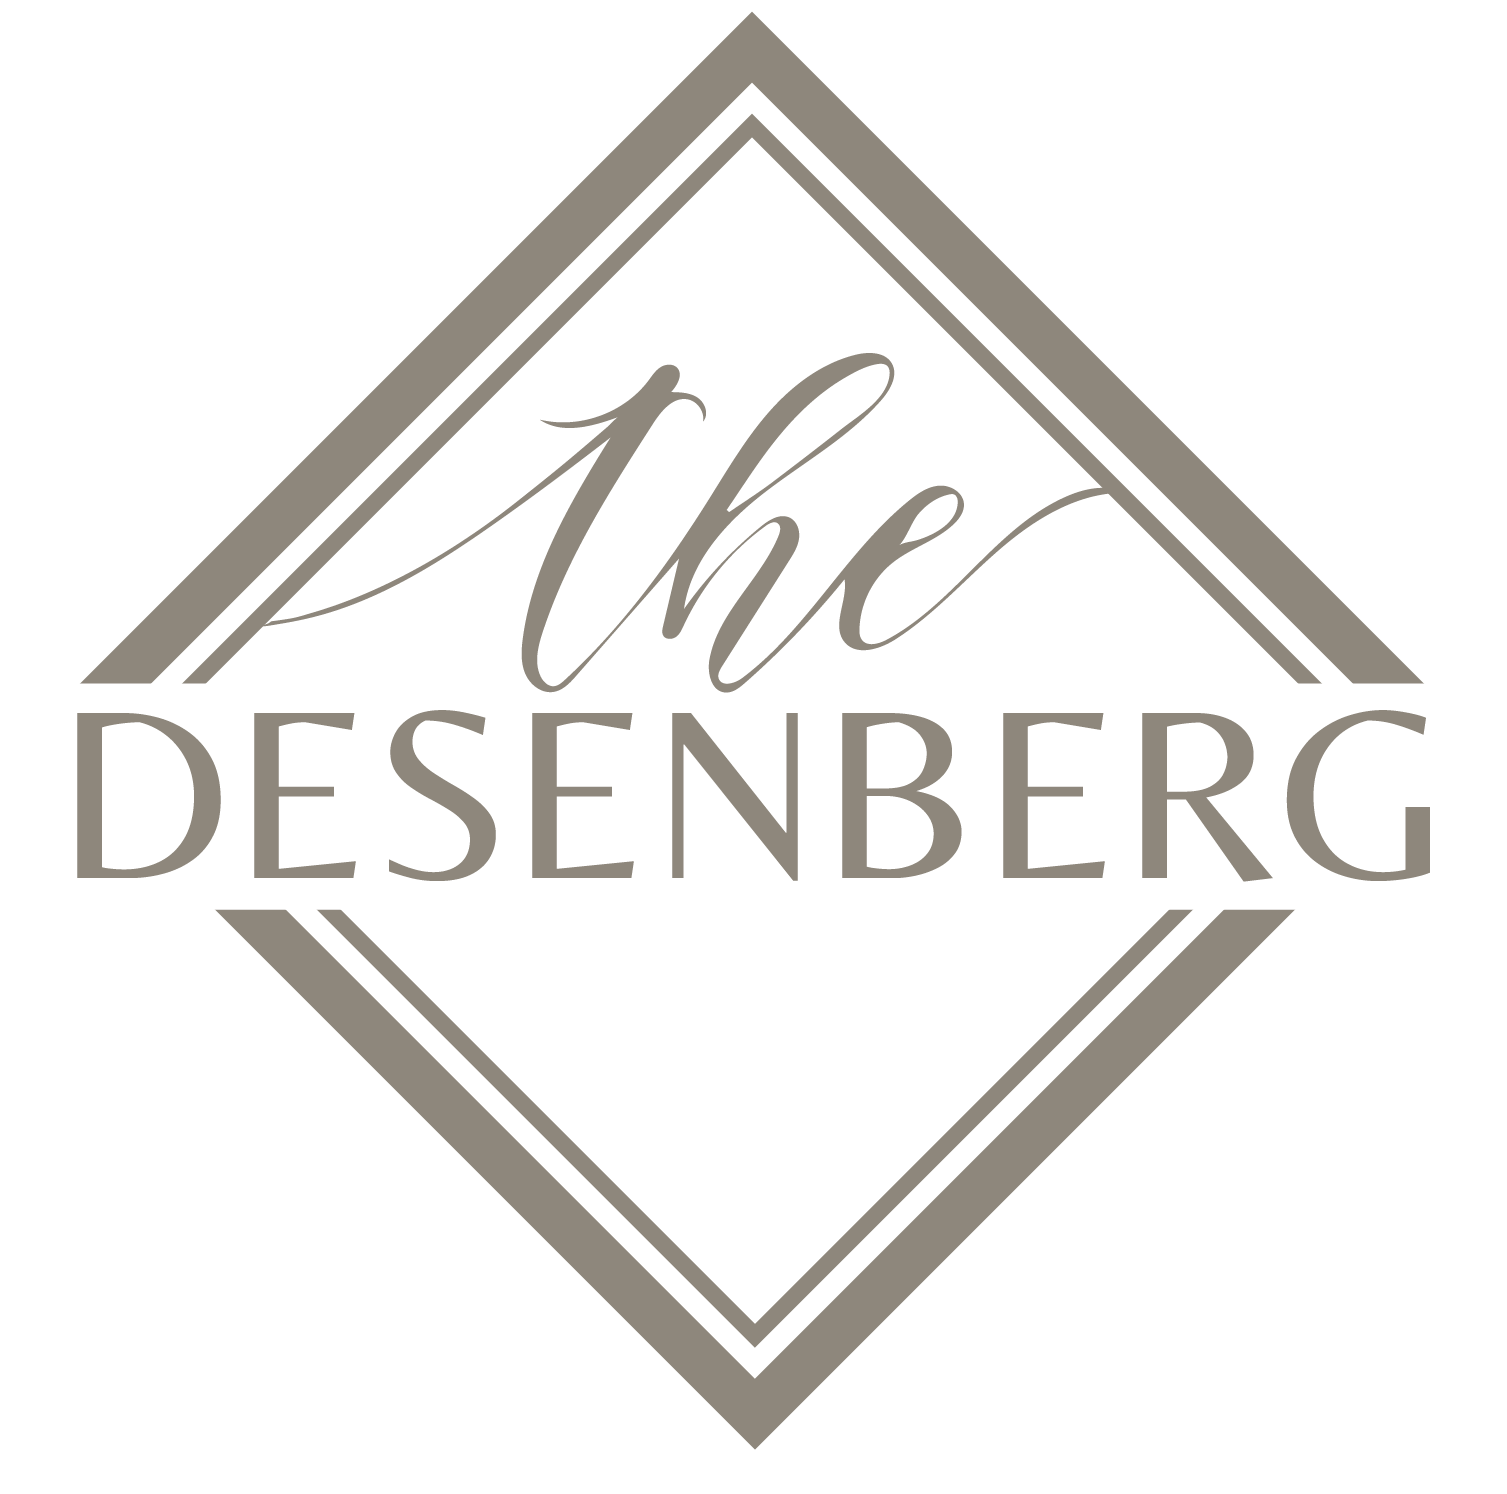 Desenberg logo